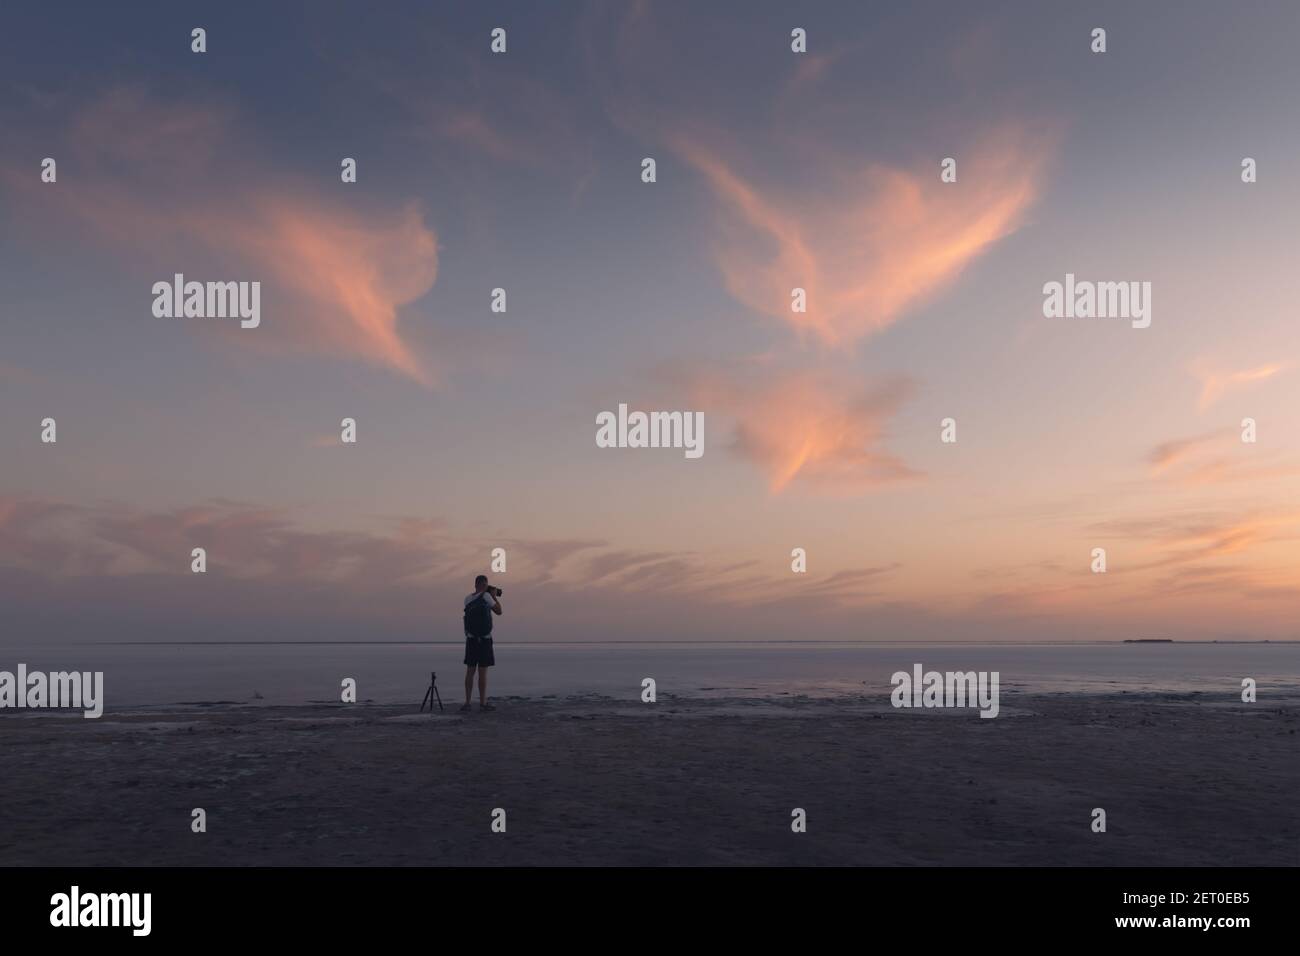 Fotografo che scatta foto con il treppiede dell'alba sull'oceano. Tramonto sul mare con cielo nuvoloso e luminoso rosso. Fotografia di paesaggio Foto Stock